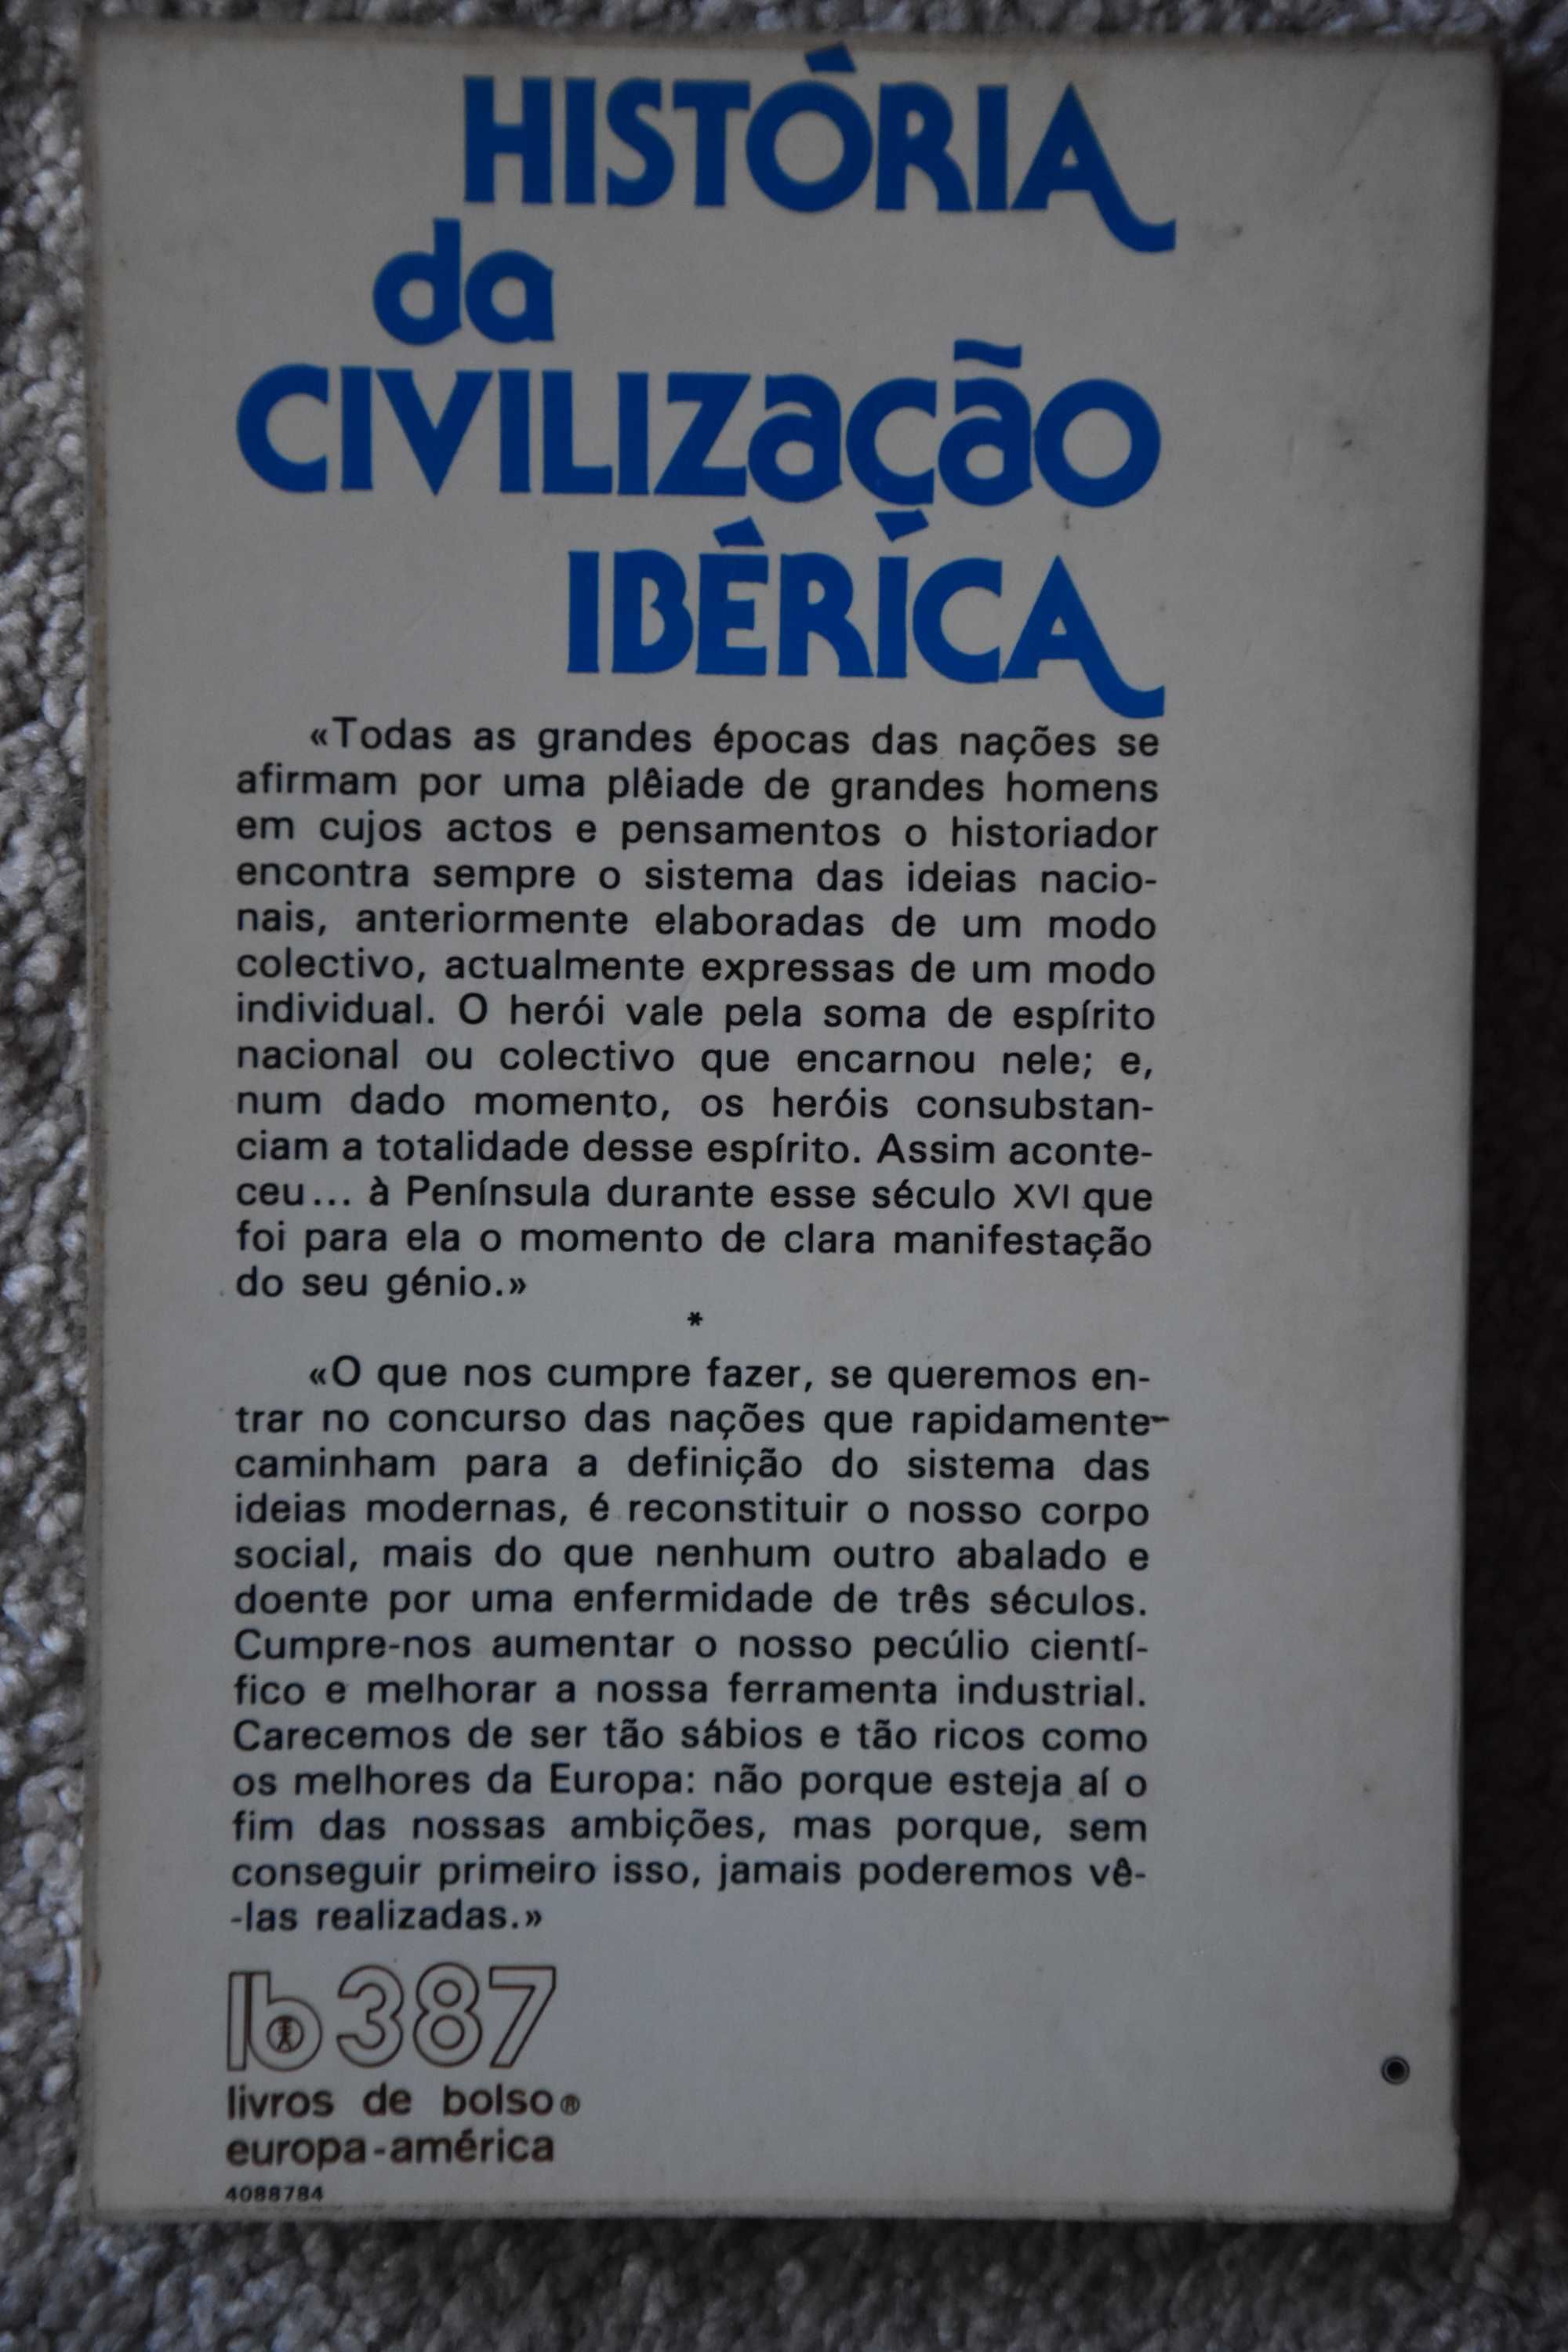 História da Civilização Ibérica, de Oliveira Martins